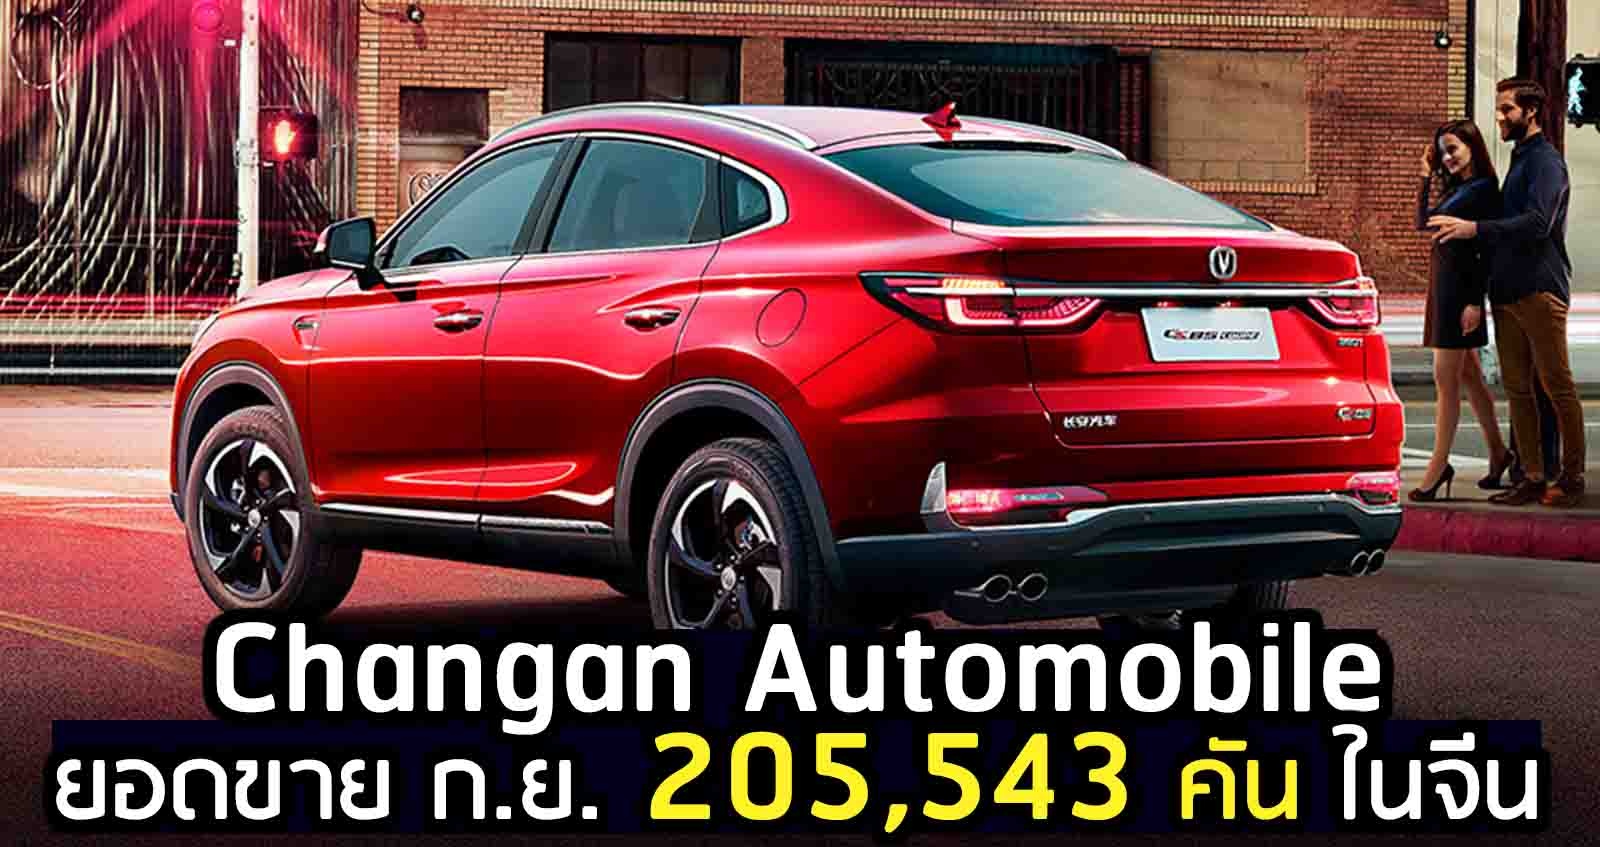 ยอดขาย ก.ย. 205,543 คัน Changan Automobile ในจีน